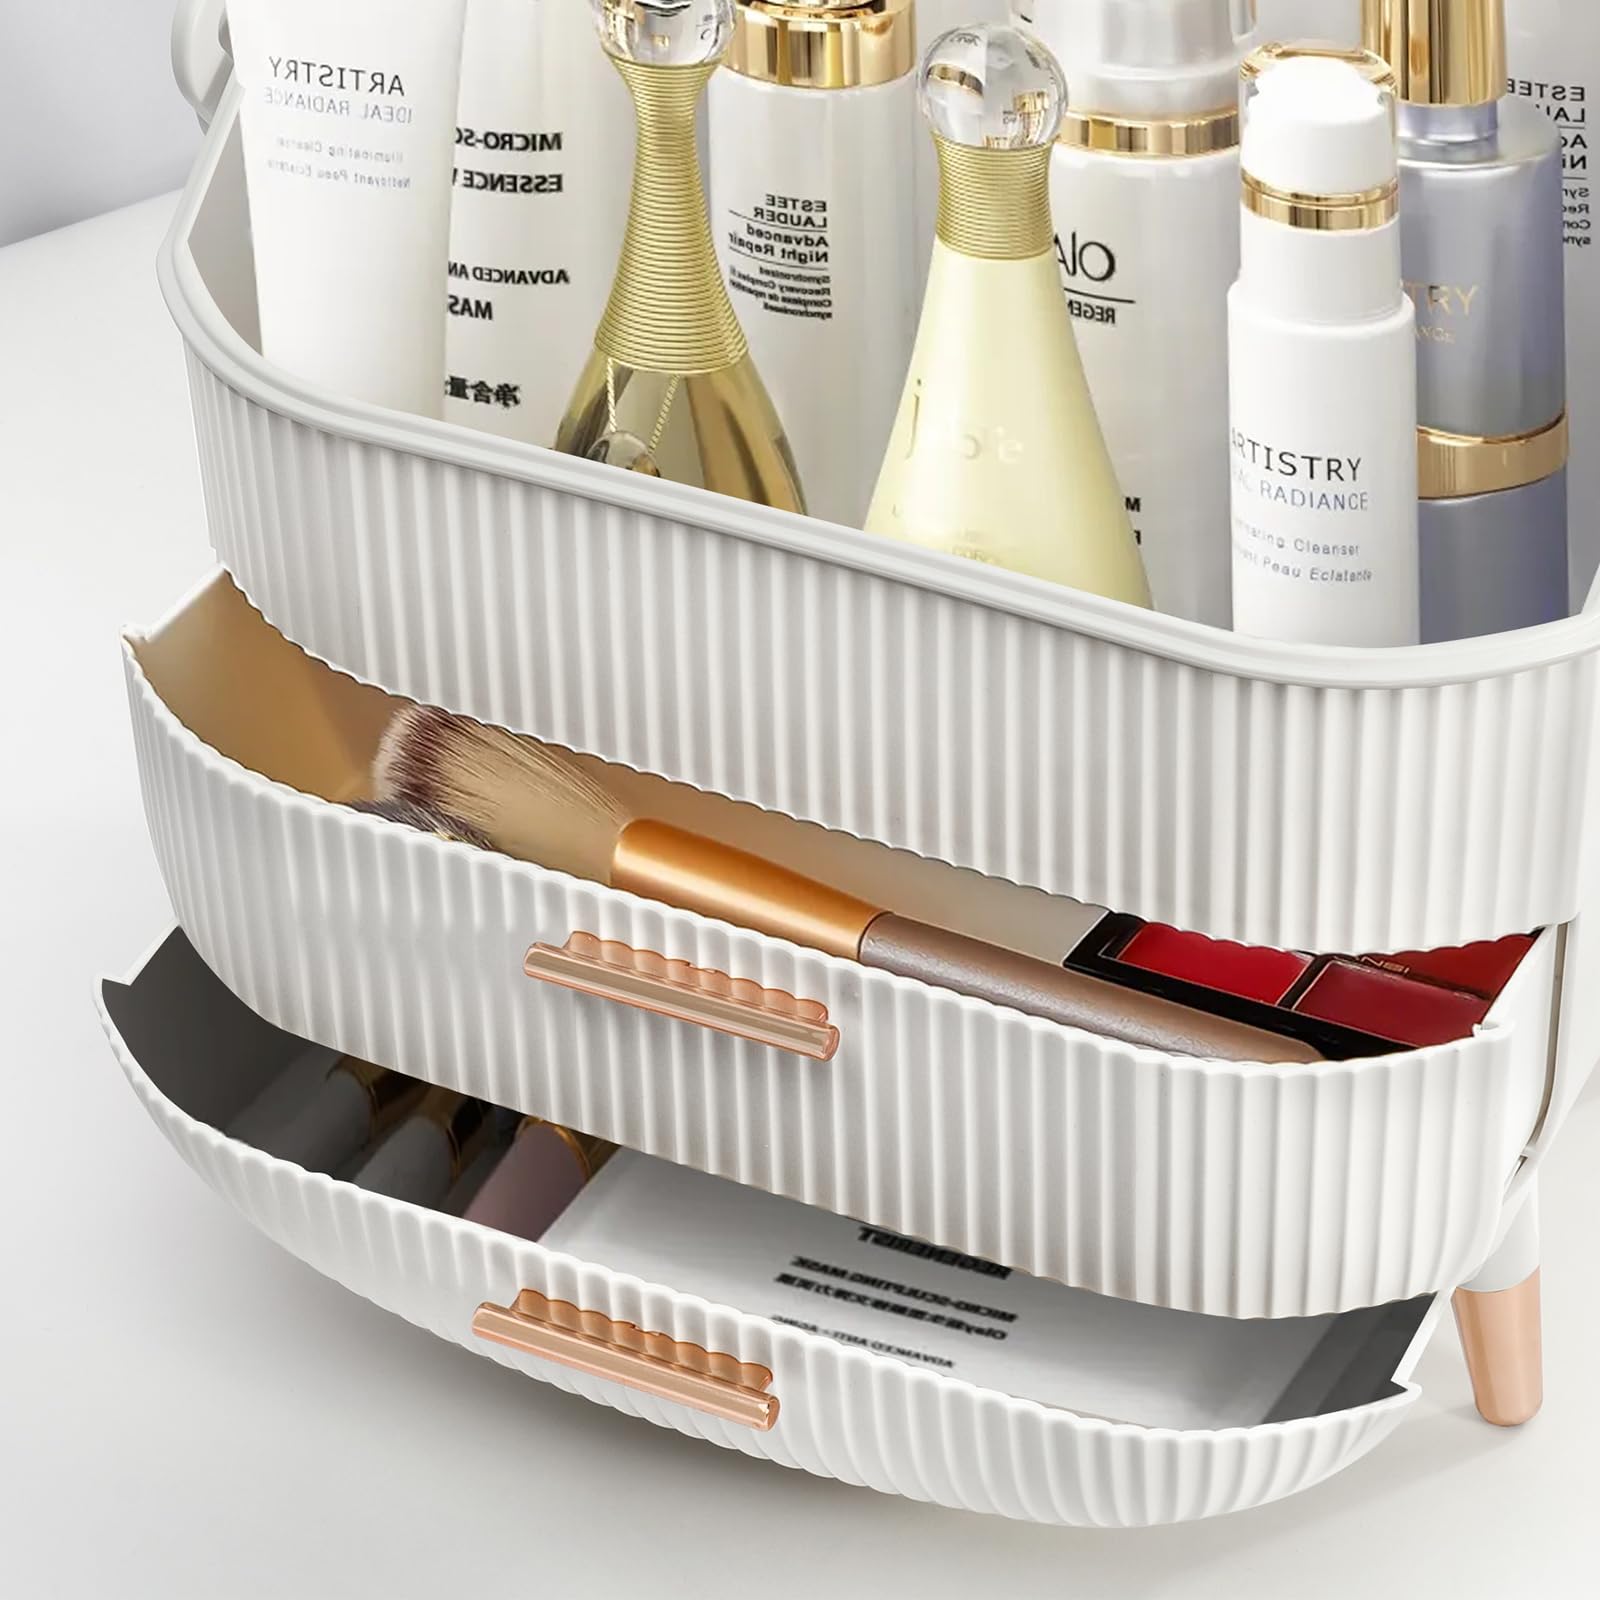 KQEBN Makeup organizer for vanity Skincare Organizer for Bathroom Countertop Vanity, Skin care product jewelry storage box.(WHITE)